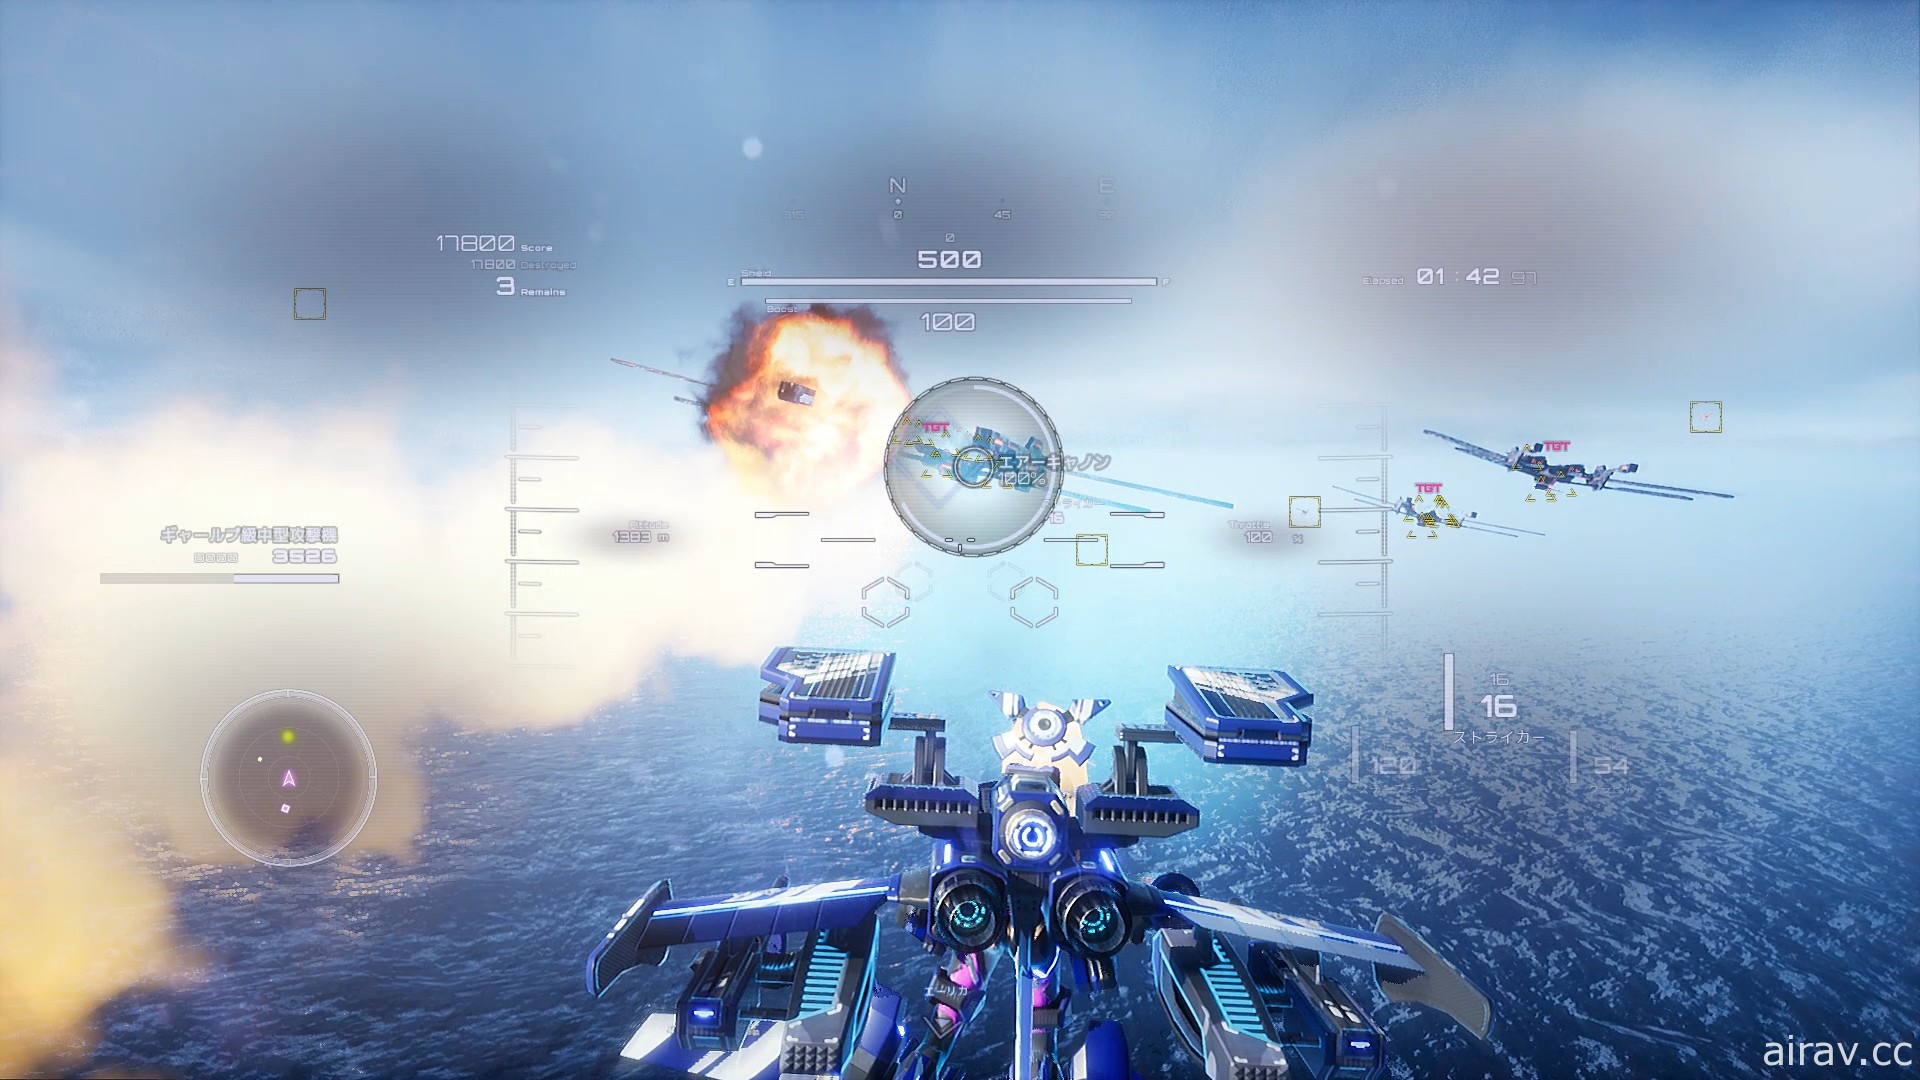 高速 3D 射击游戏《铁翼少女》2021 年 2 月推出 翱翔天际对抗虚无者的致命威胁